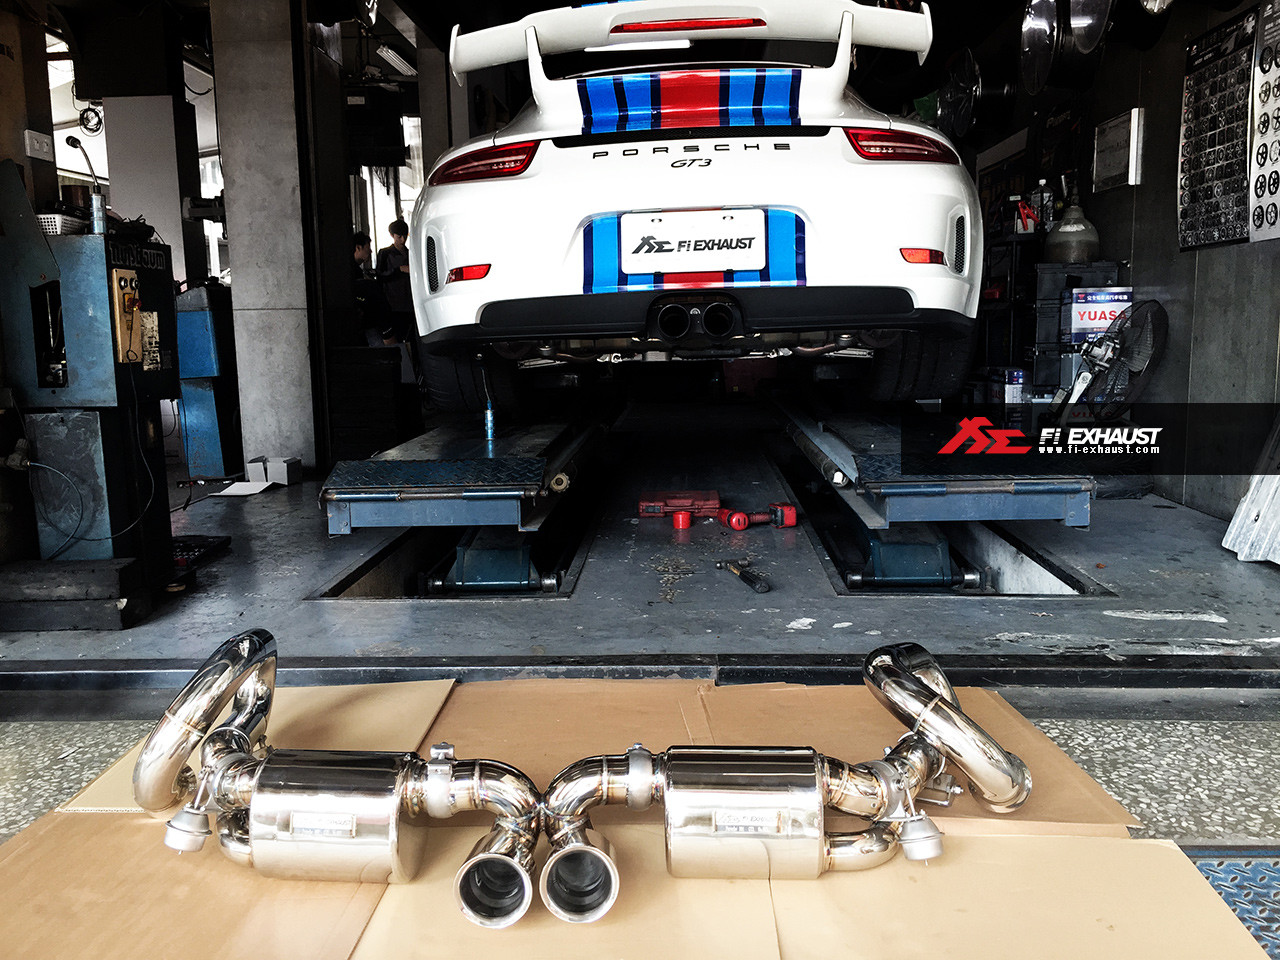 Выхлопная система Fi Exhaust на Porsche 991 GT3, фото 1